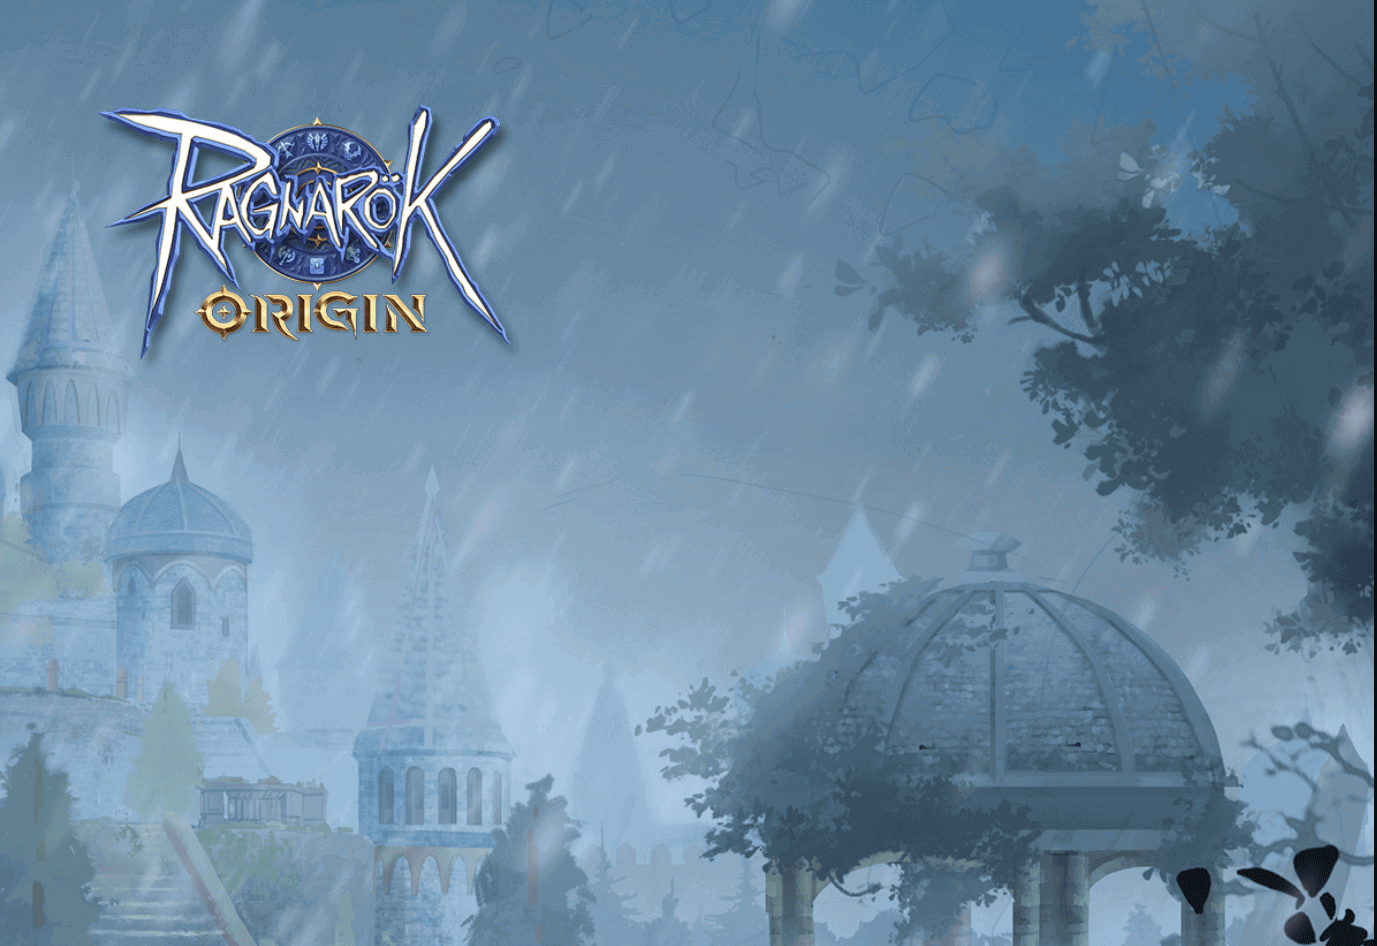 Ragnarok Origin Global diversified gameplay